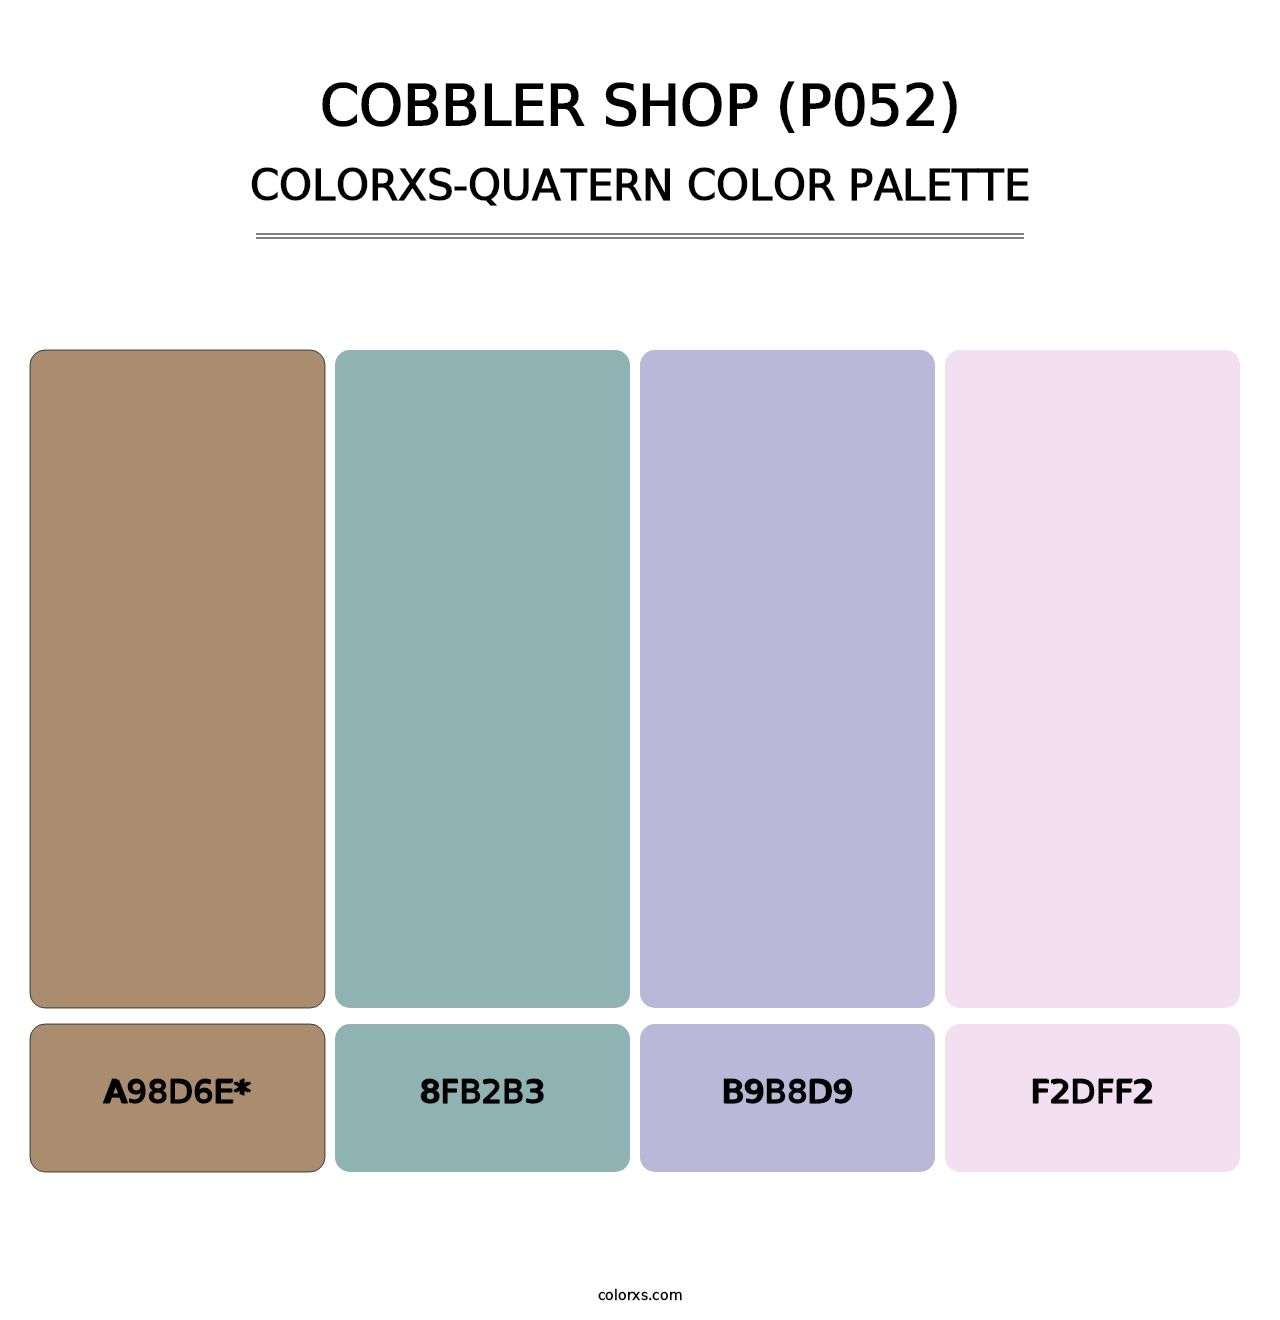 Cobbler Shop (P052) - Colorxs Quatern Palette